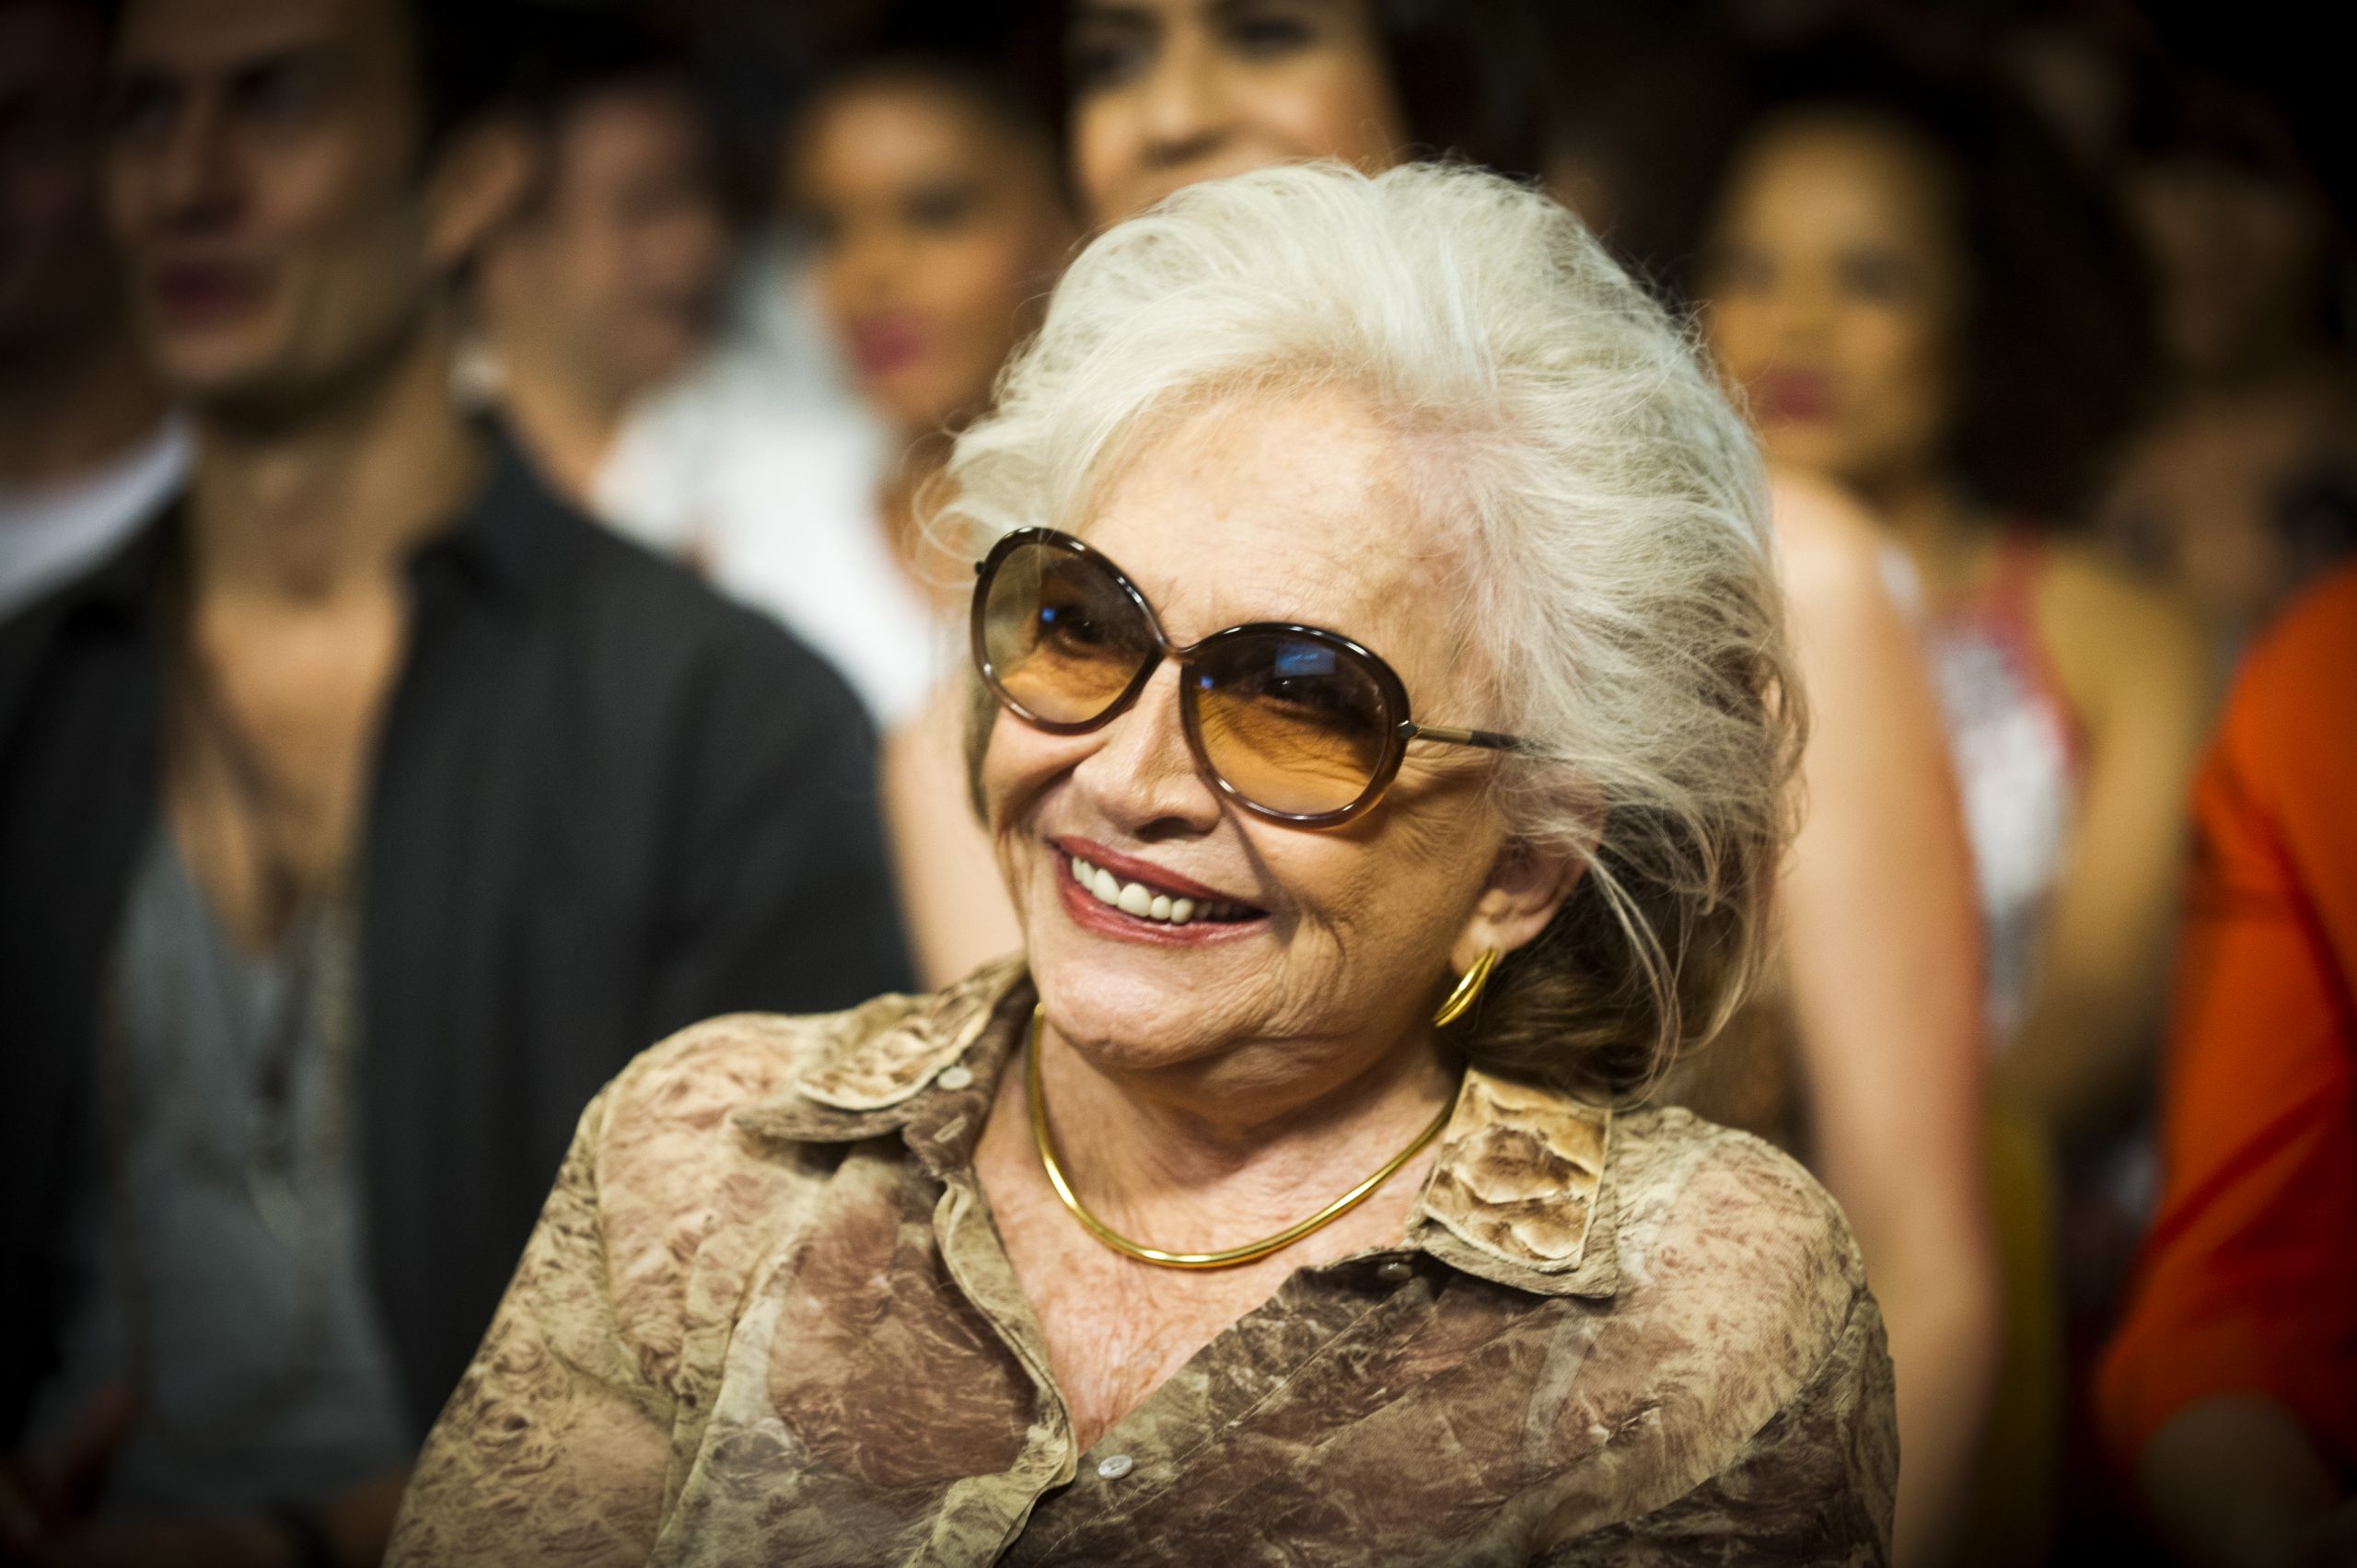 Nathalia Timberg faz 94 anos e é homenageada na internet: “Top das tops!”